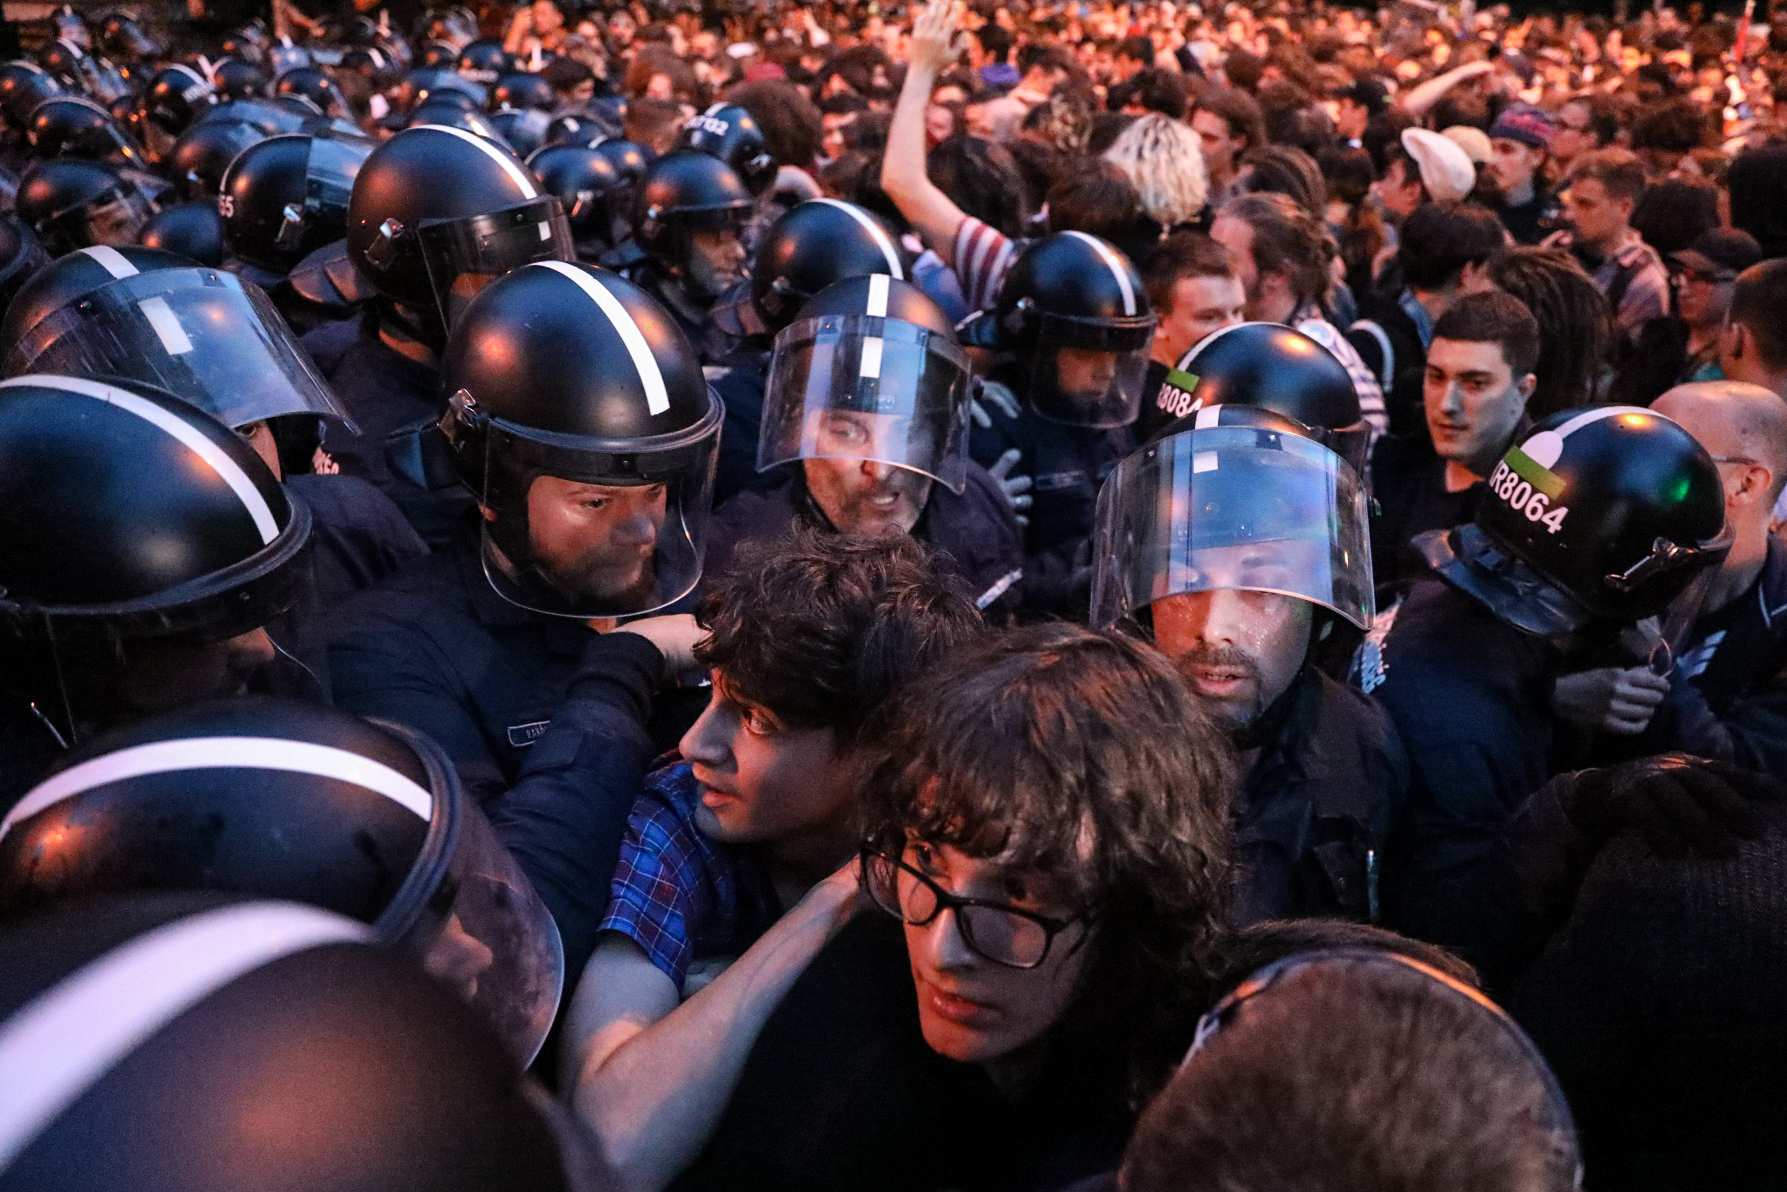 Kiszorították a tüntetőket a Lendvay utcából, csendesedik a tüntetés